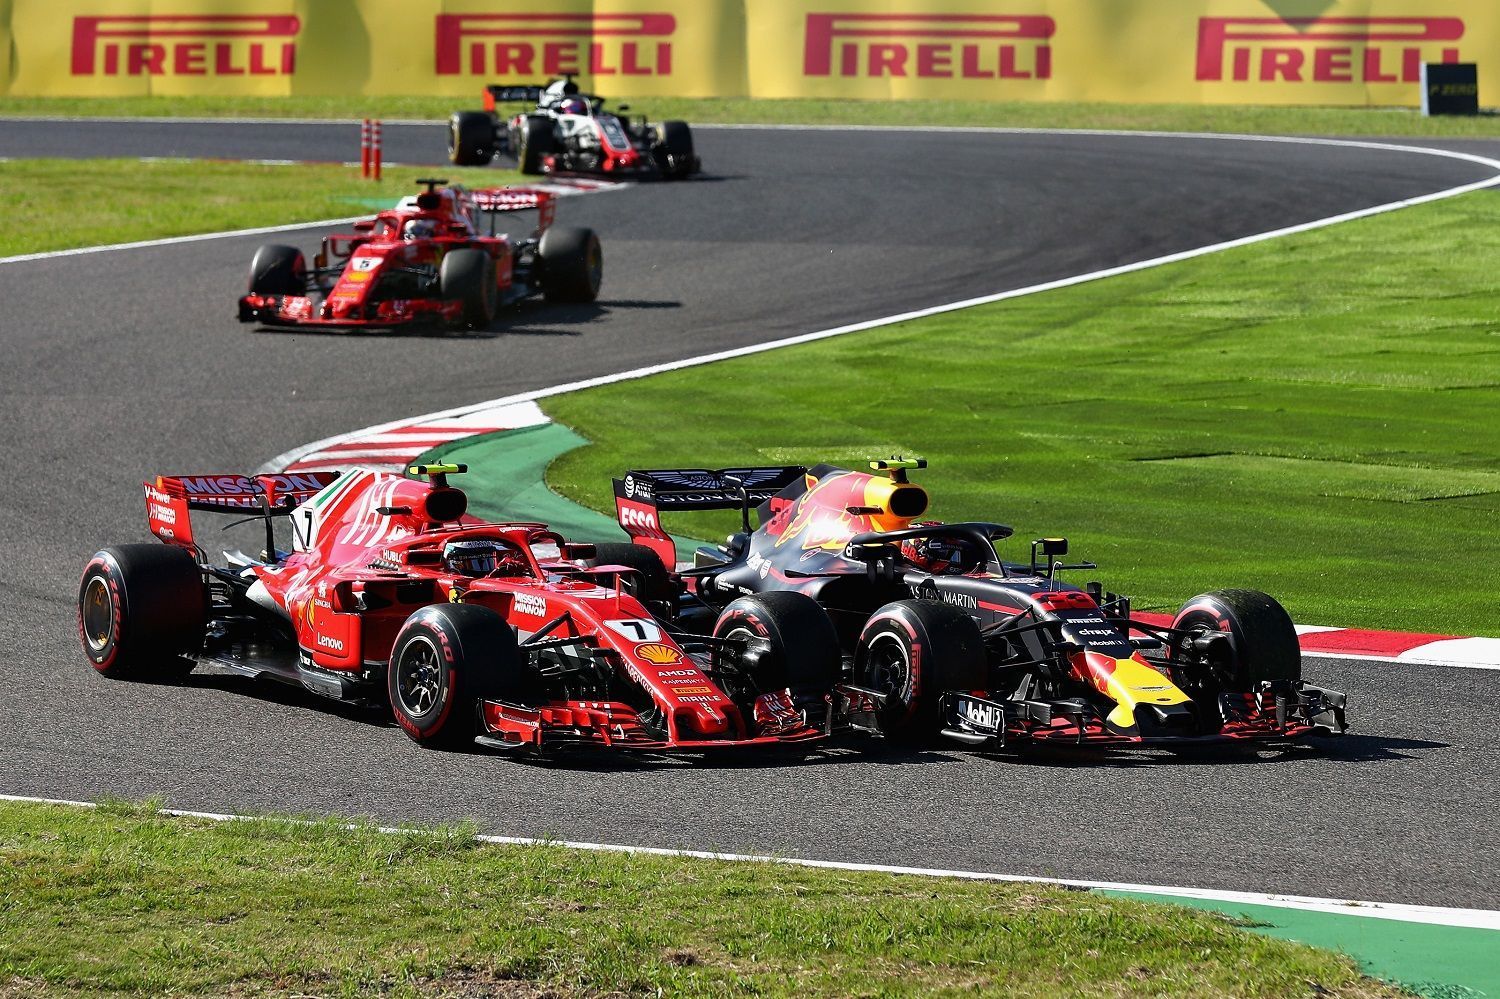 Kimi Raikkonen, Max Verstappen, Sebastian Vettel